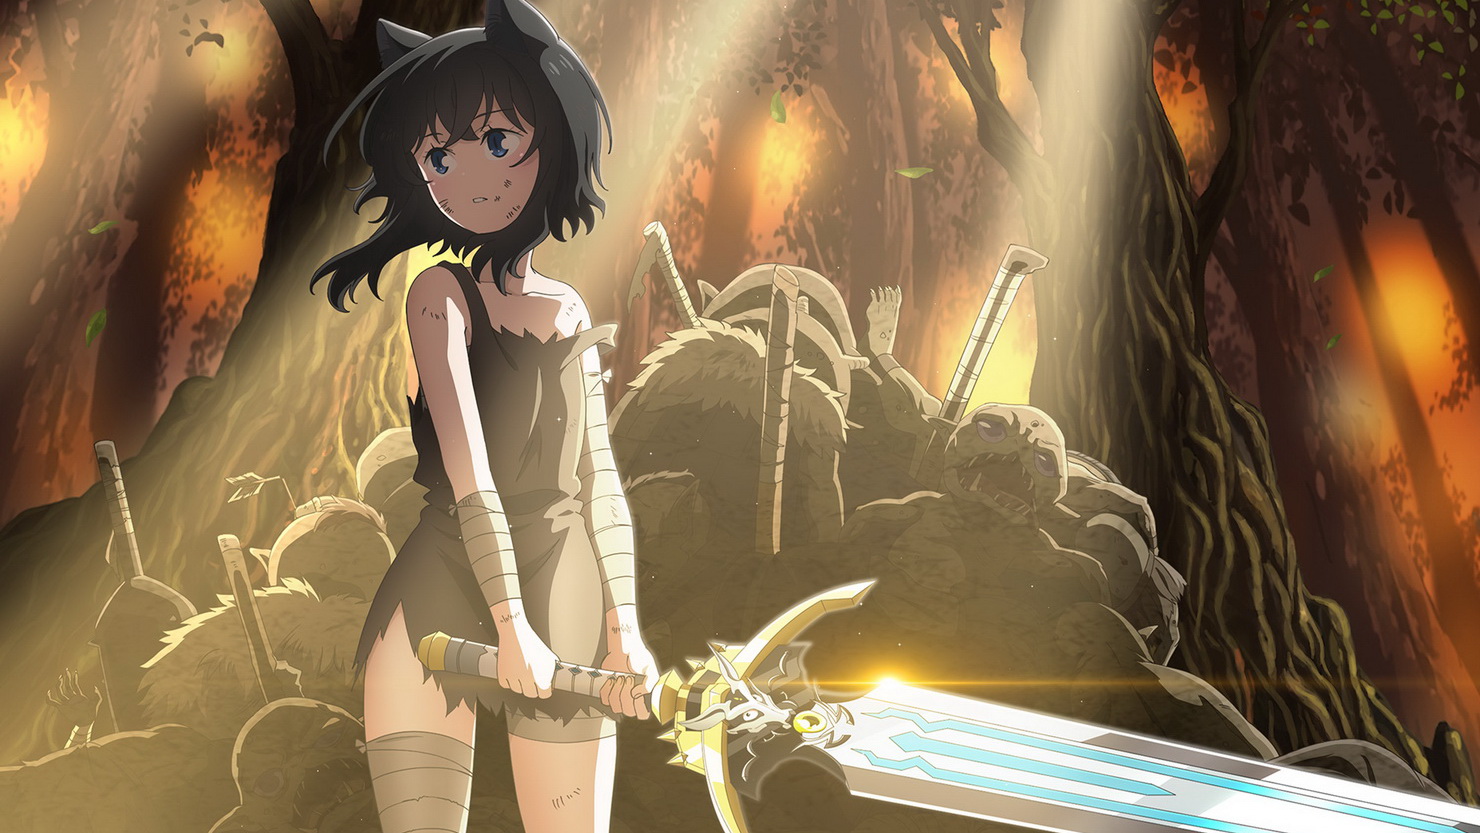 "О моём перерождении в меч" — новый трейлер и дата выхода аниме по девушку-кошку и ей необычный меч